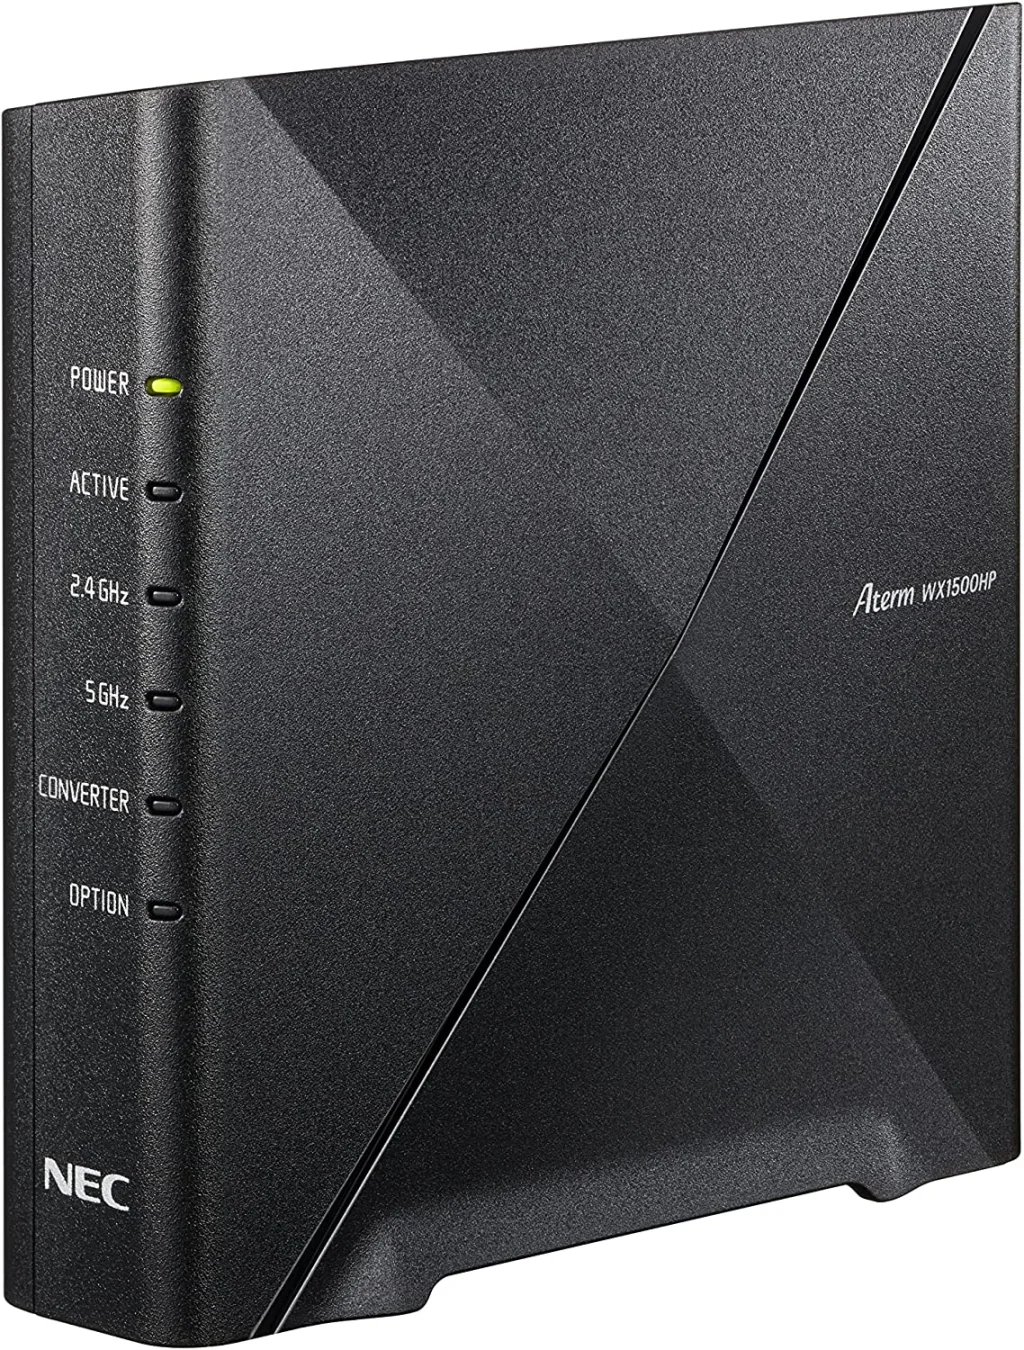 NEC Aterm WX1500HP